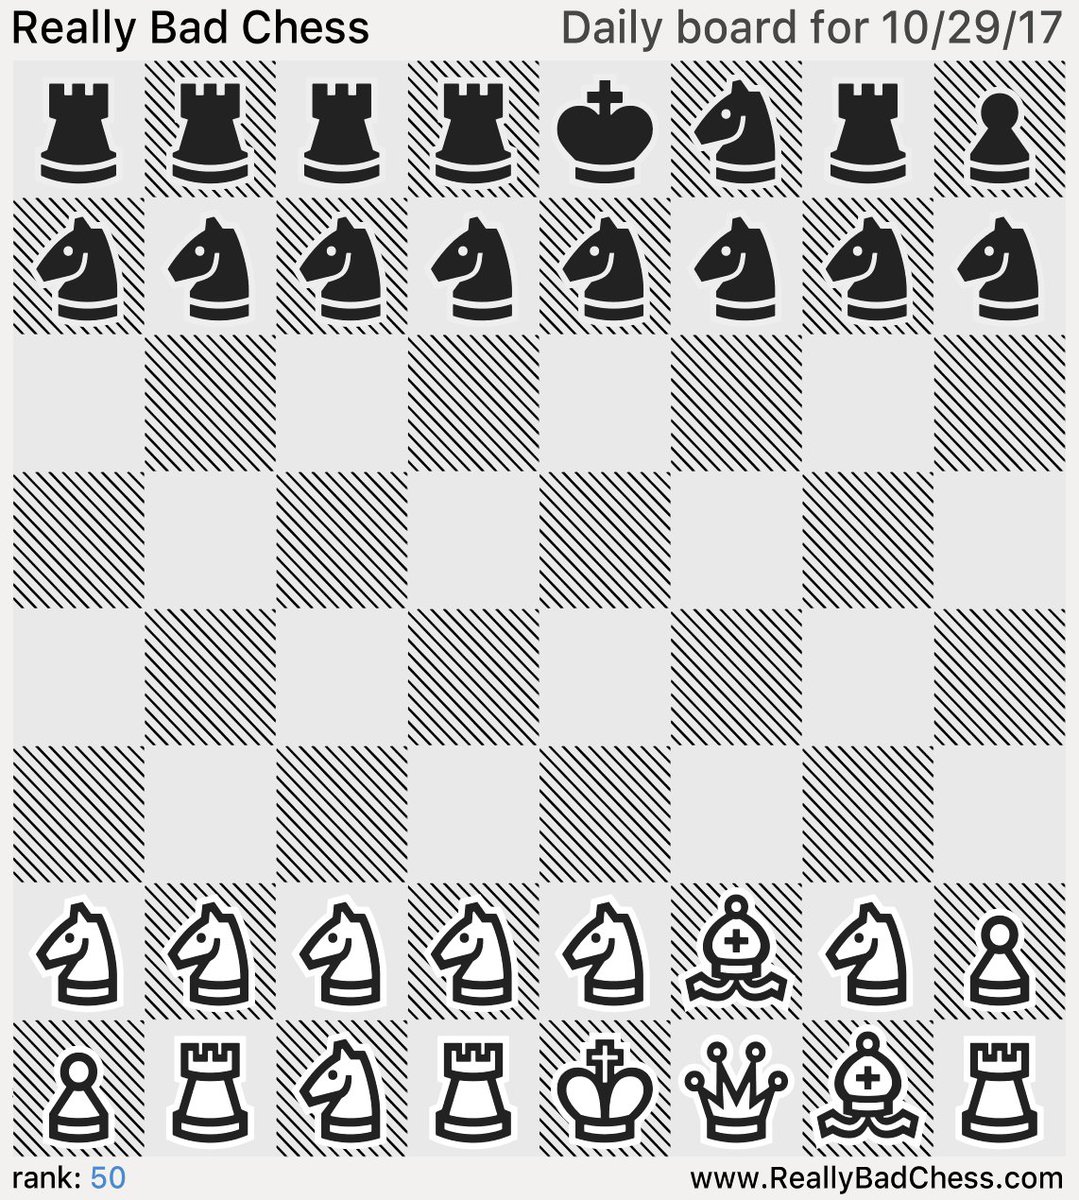 Шахматная доска с фигурами